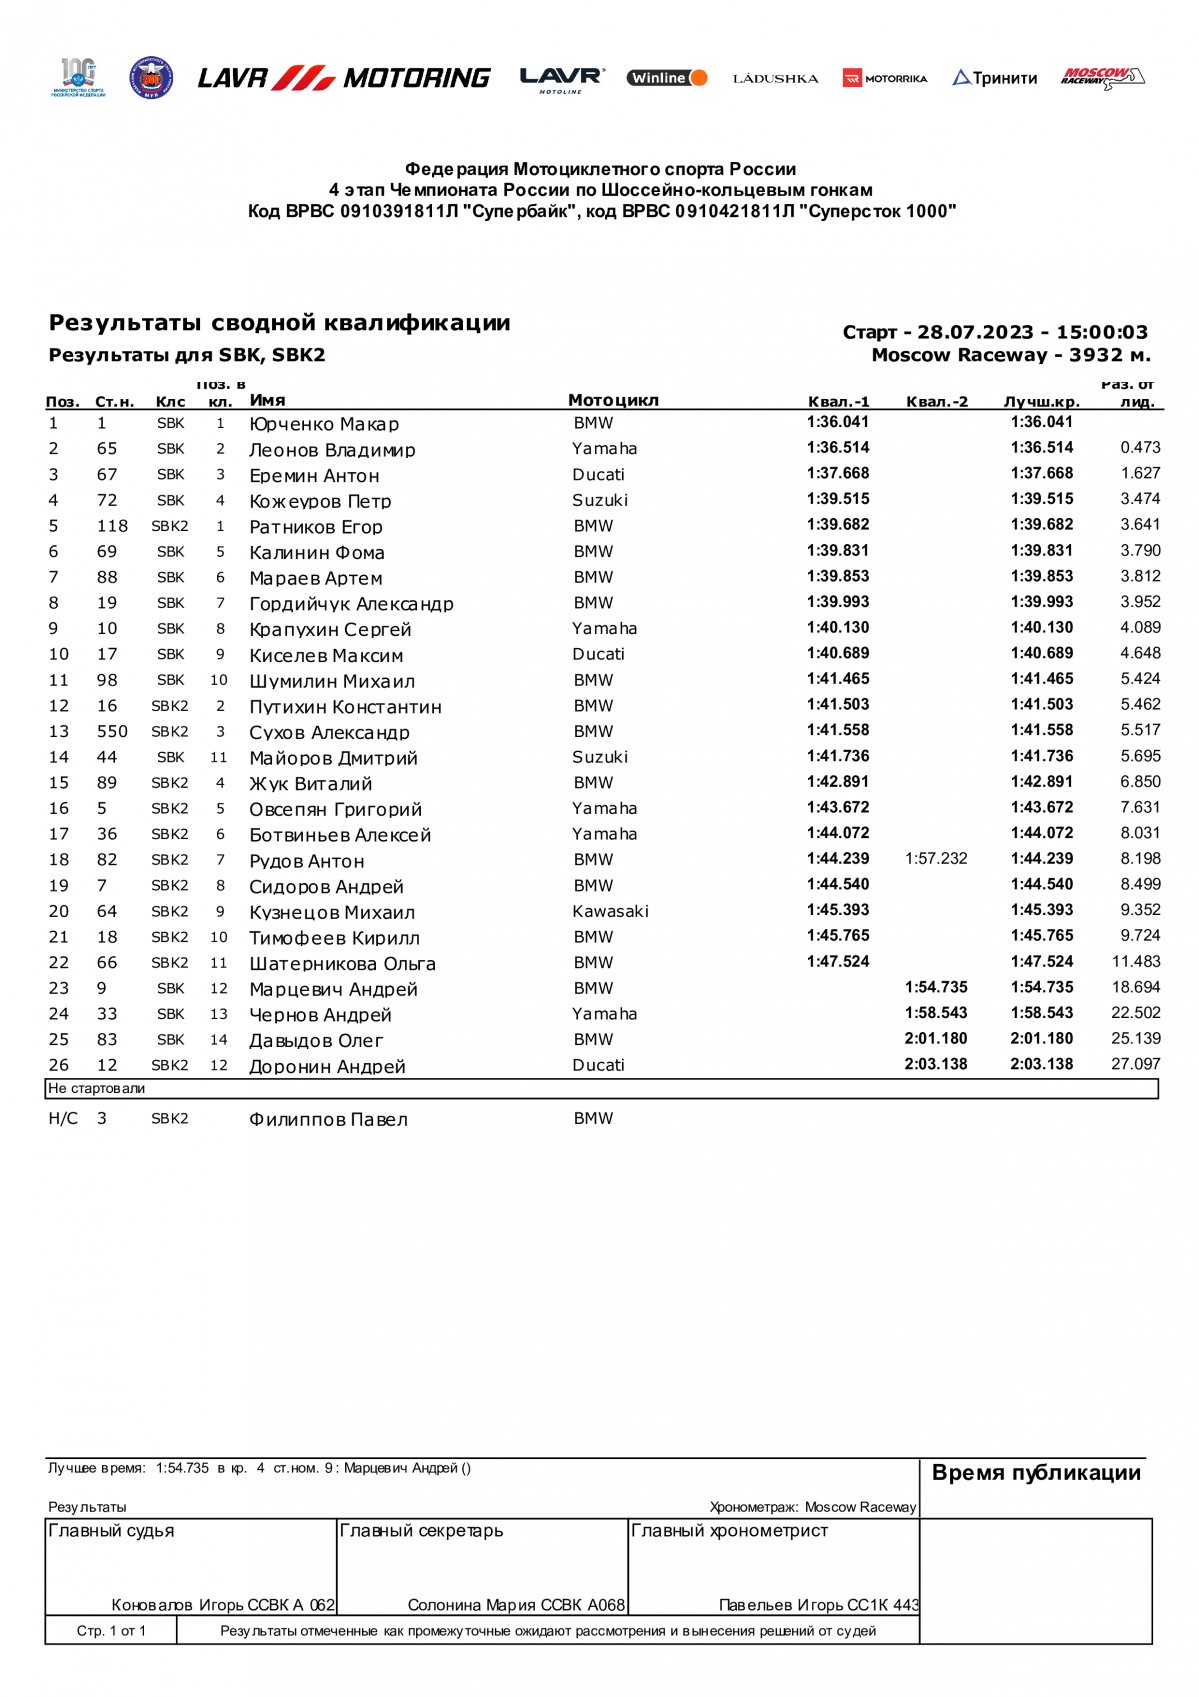 Результаты квалификации SBK3, Moscow Raceway, 4 этап, Гран-При Москвы (30.07.2023)